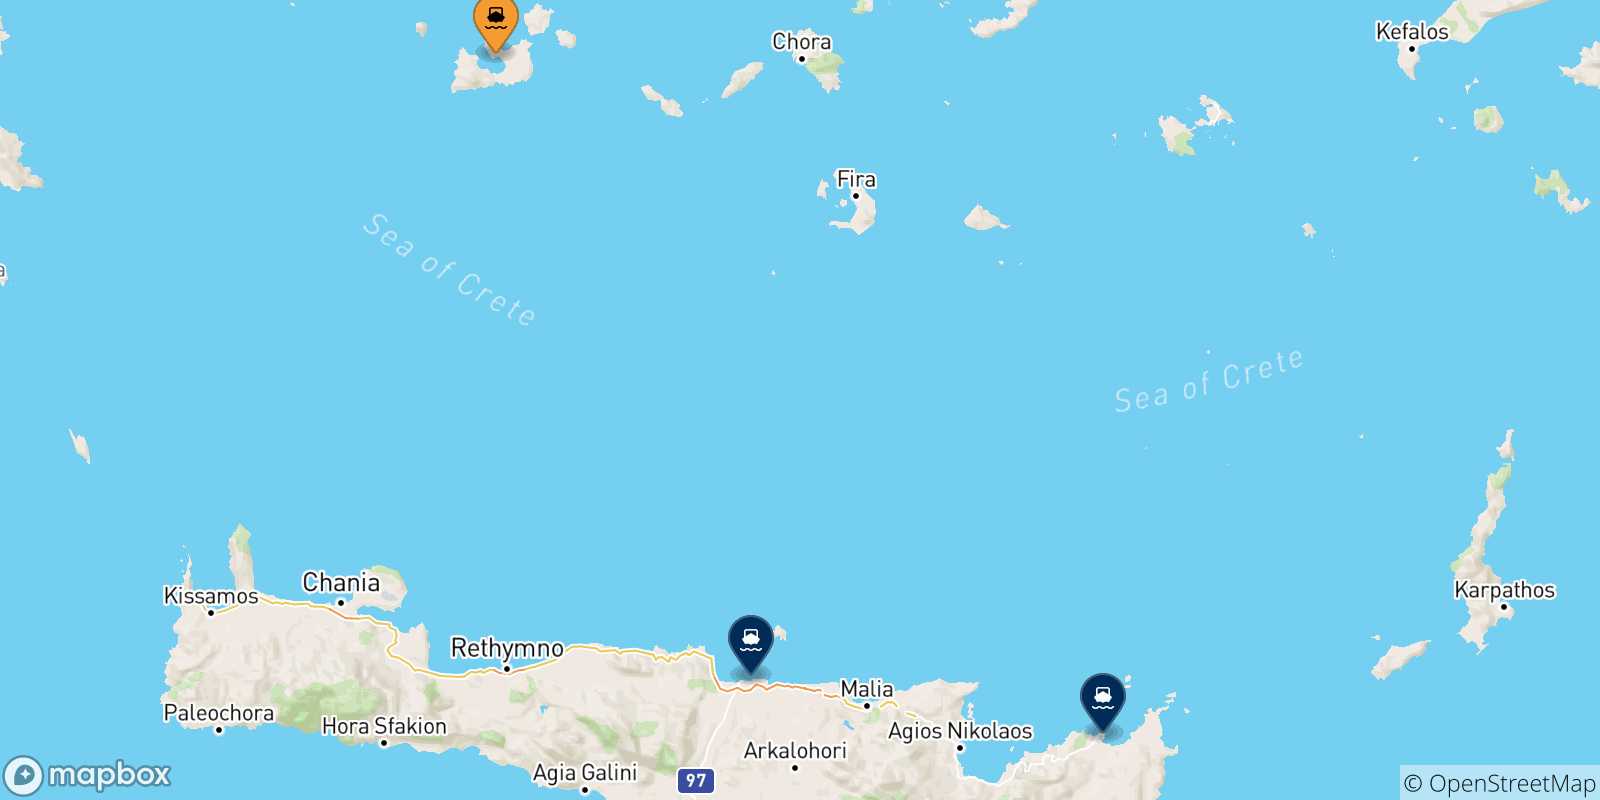 Mappa delle possibili rotte tra Milos e Creta